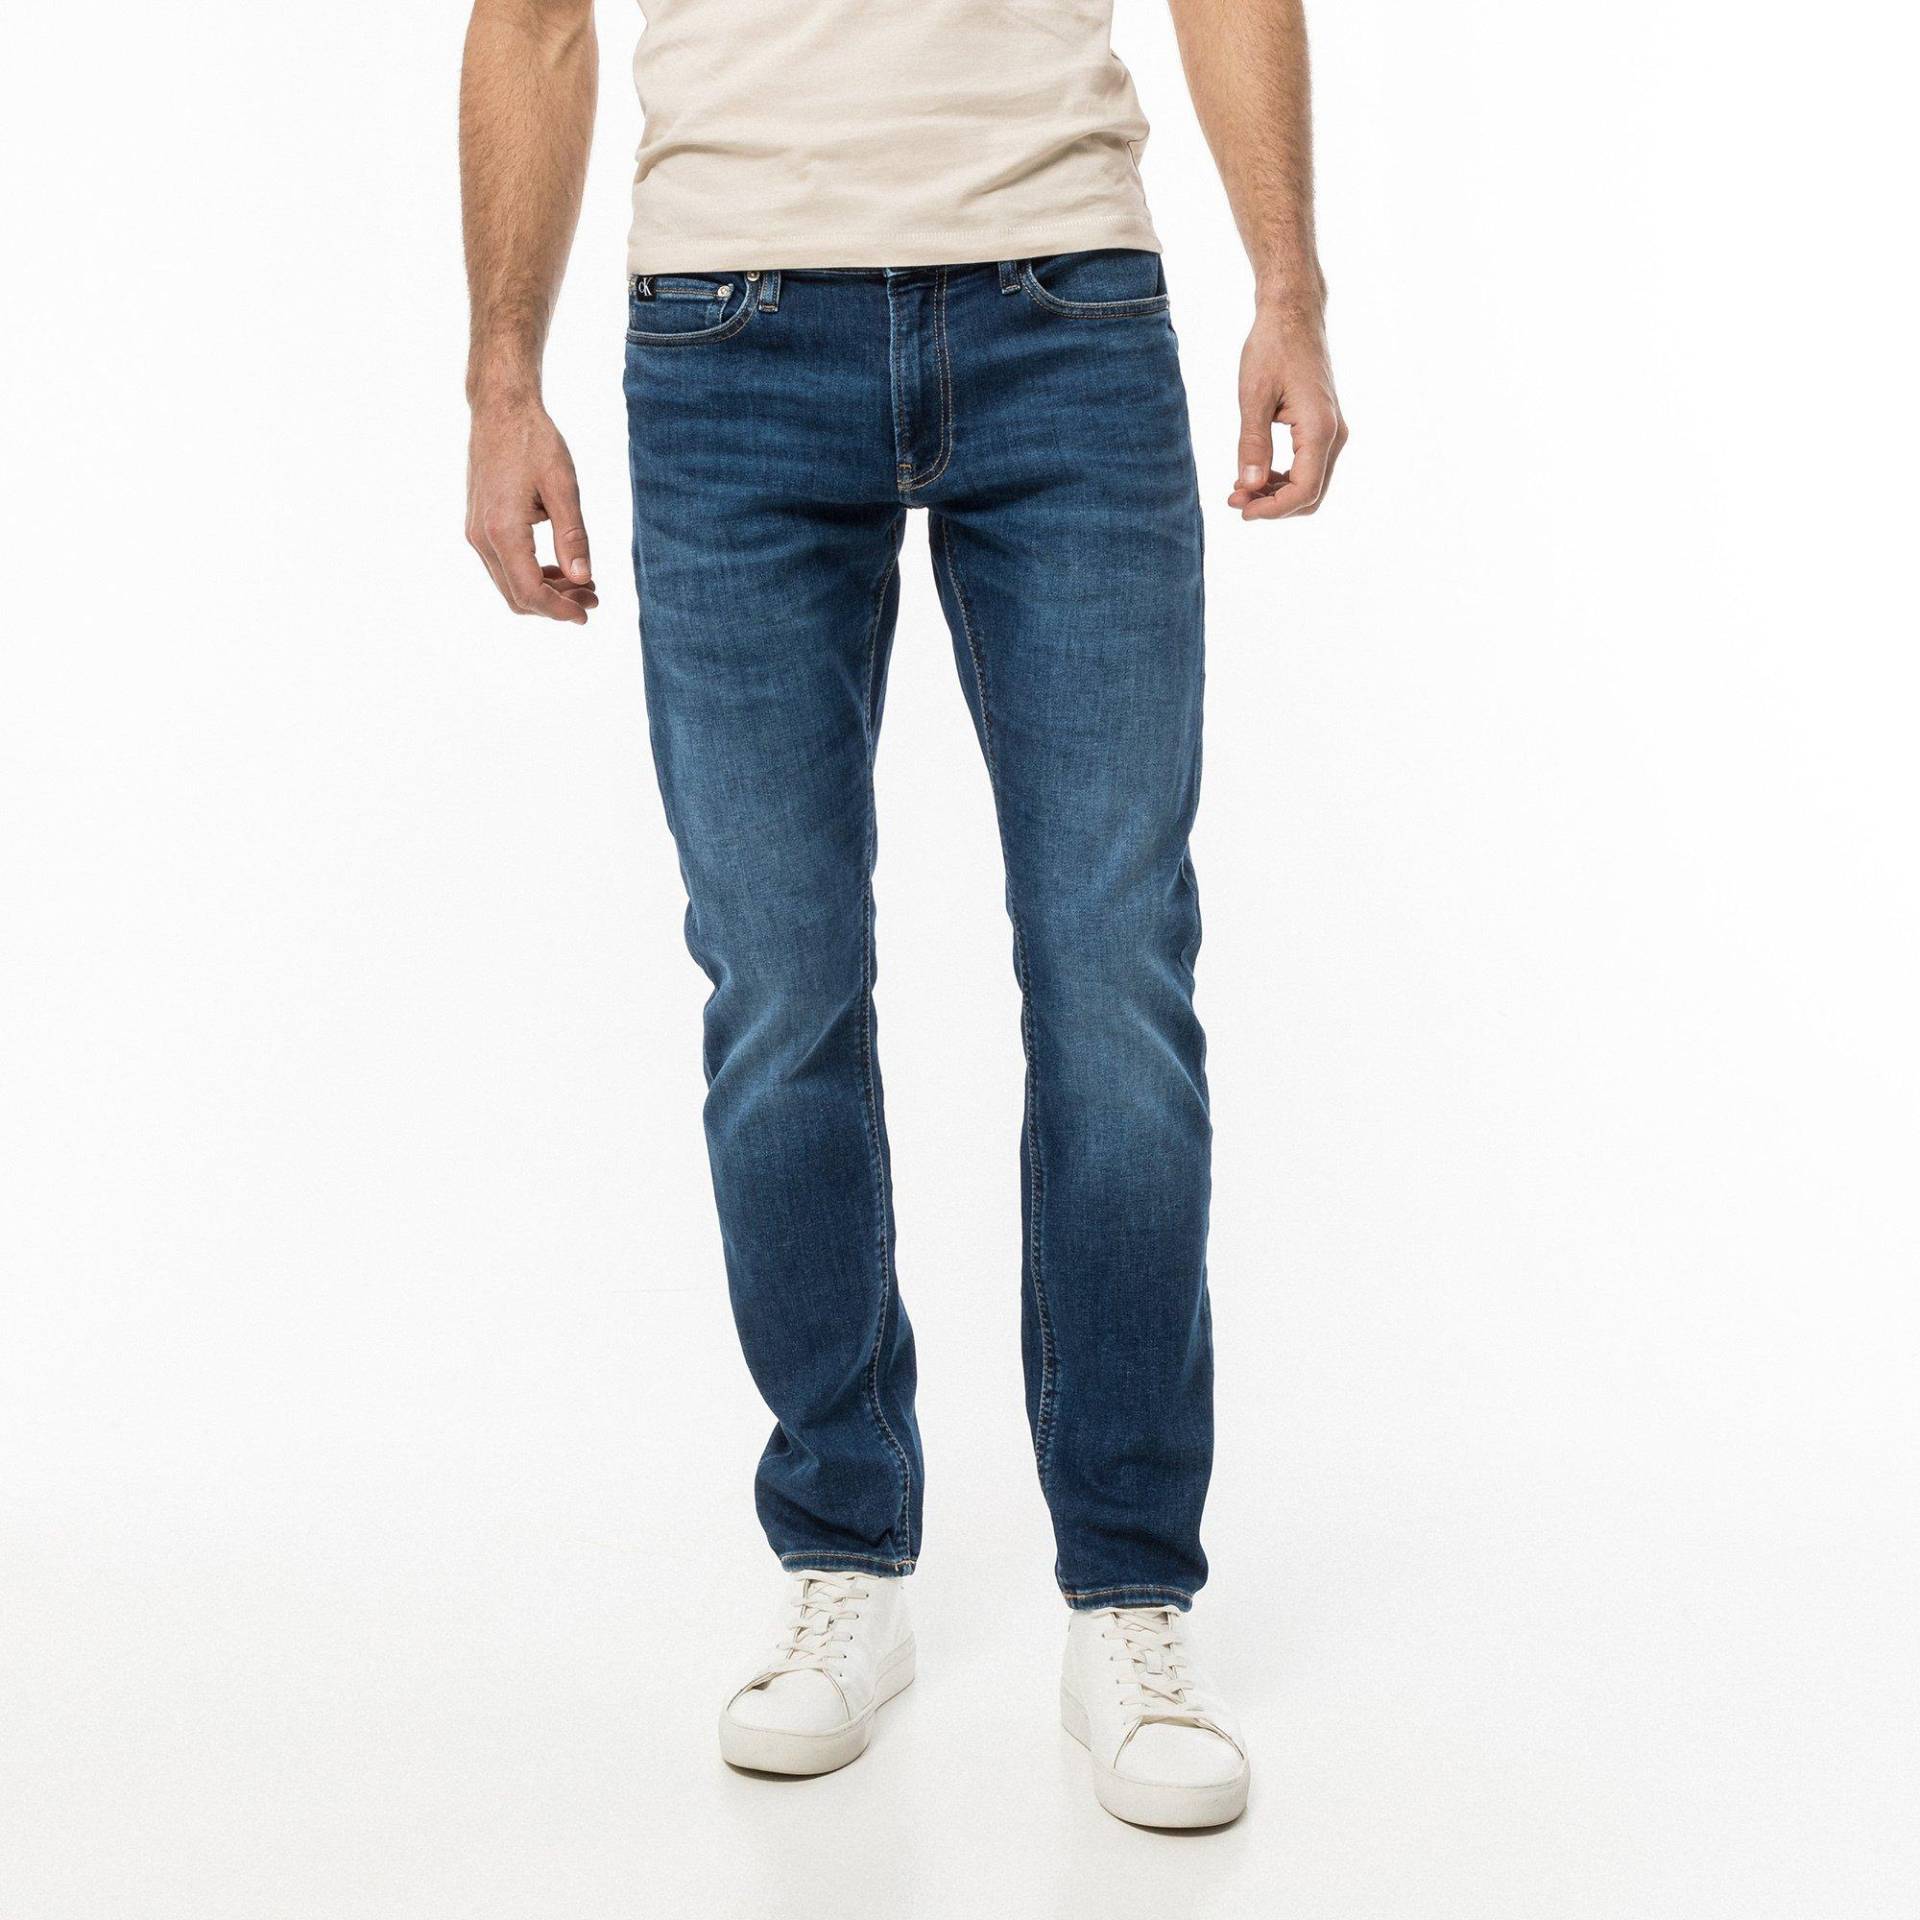 Jeans, Slim Fit Herren Dunkelblau L32/W30 von Calvin Klein Jeans